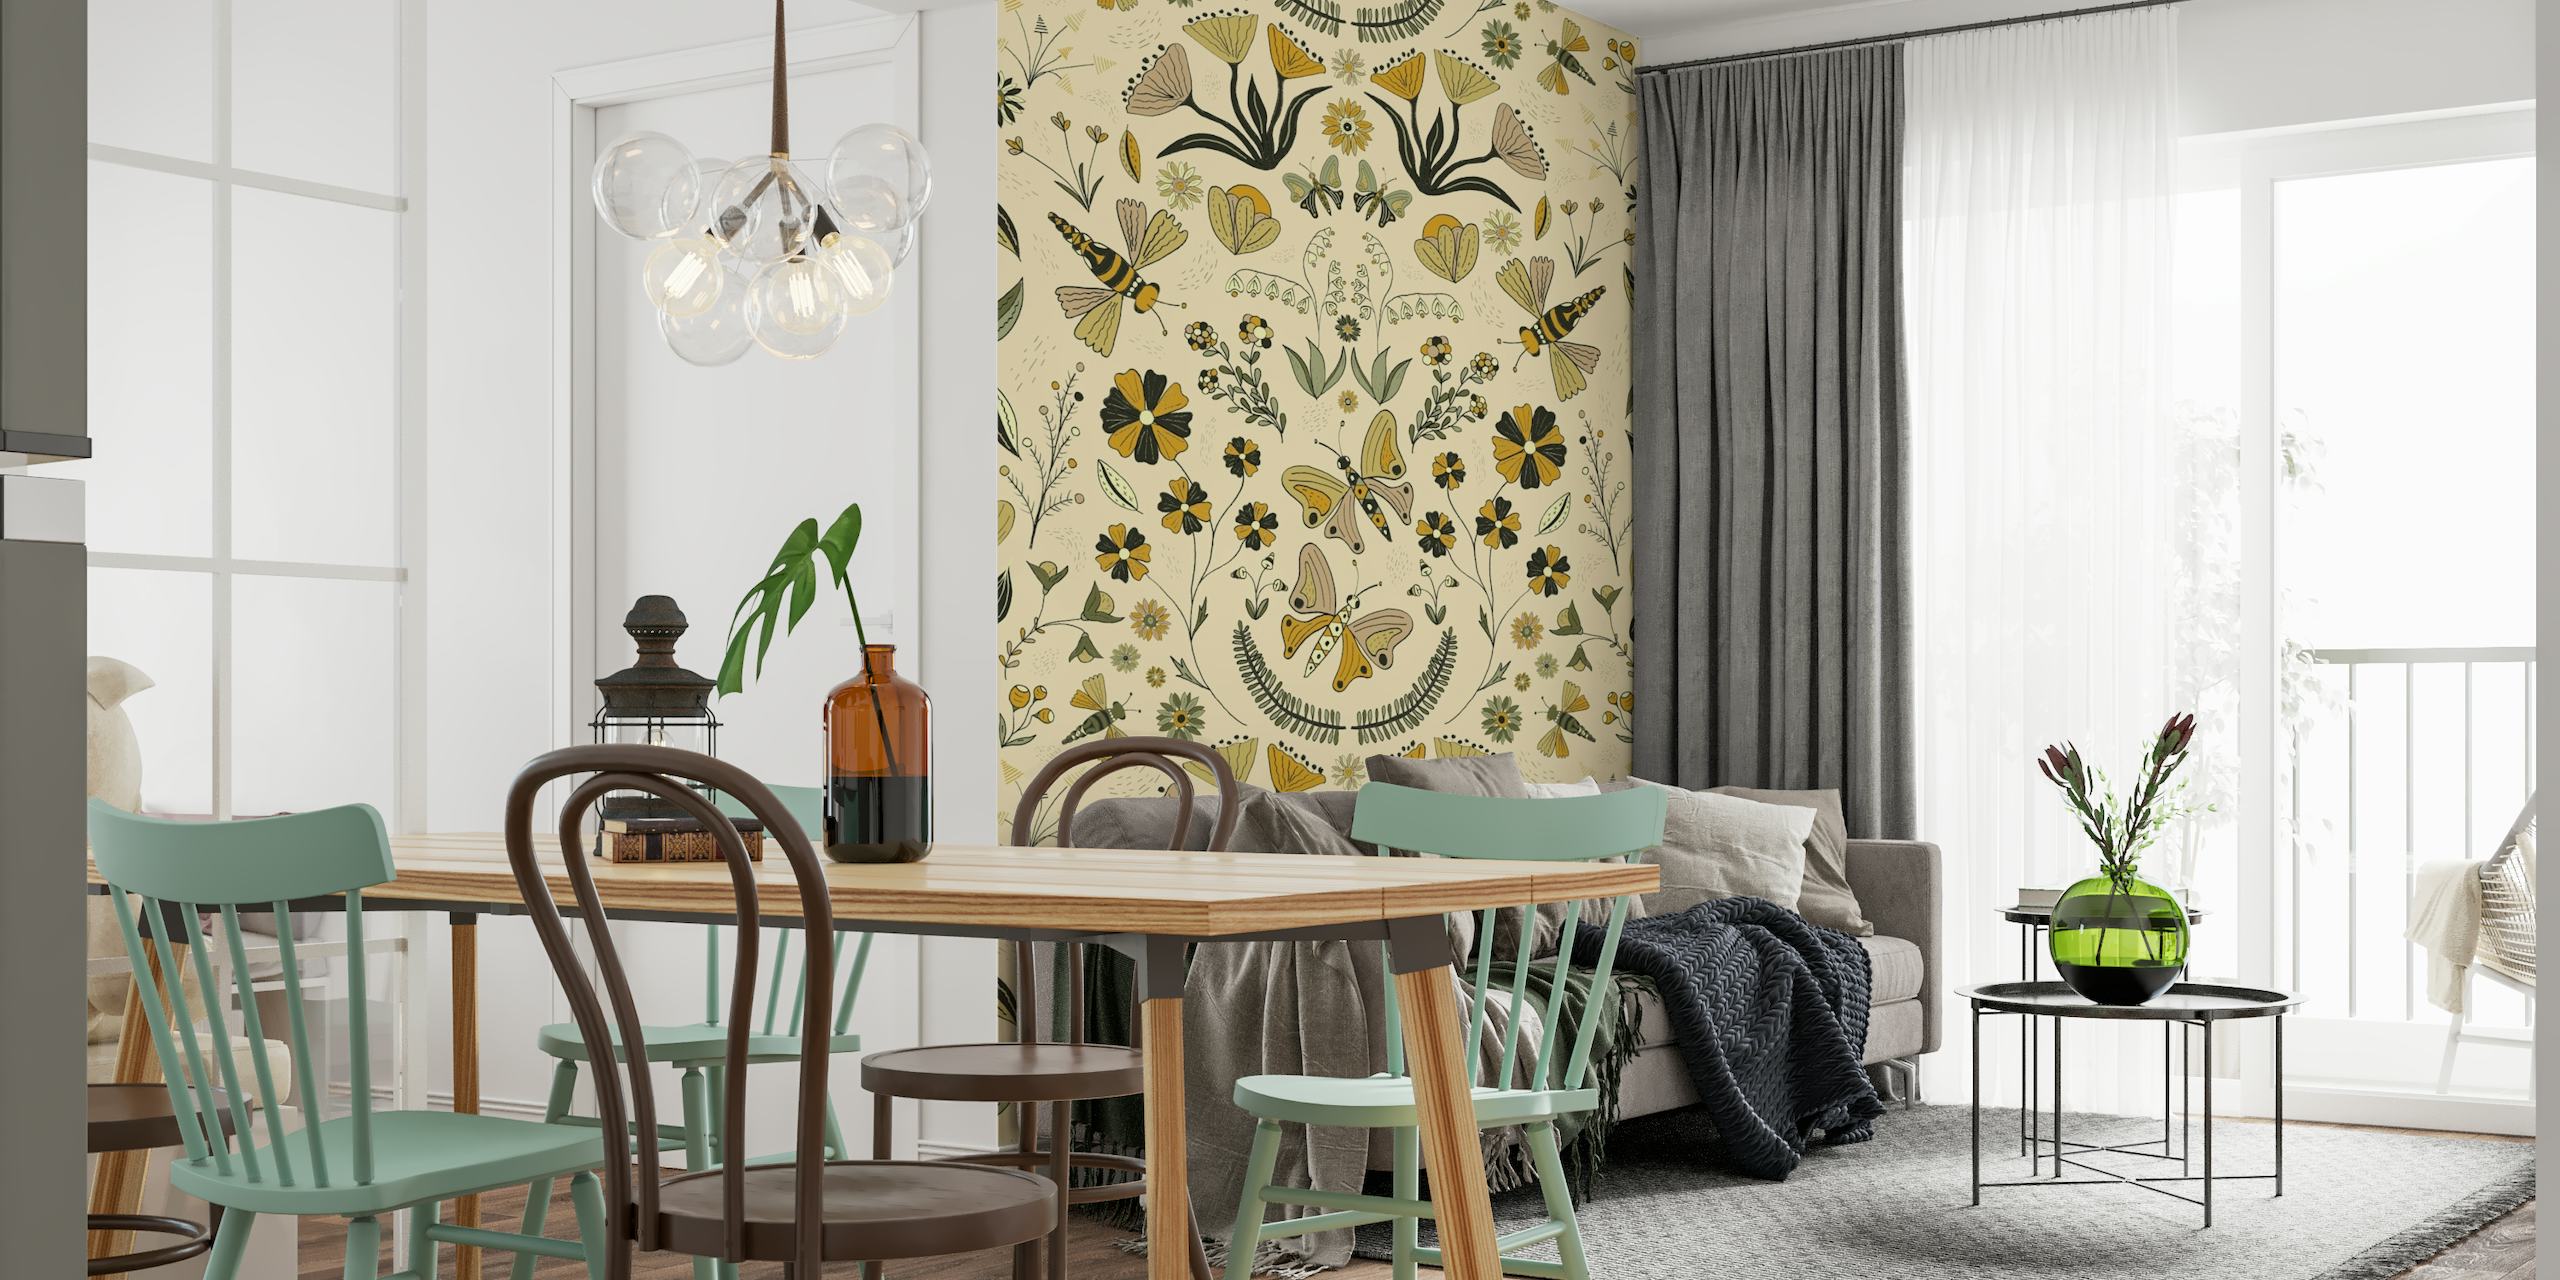 Illustratives Wandgemälde mit einem symmetrischen Muster aus Pflanzen, Schmetterlingen und abstrakten Tieren in einer Gartenumgebung